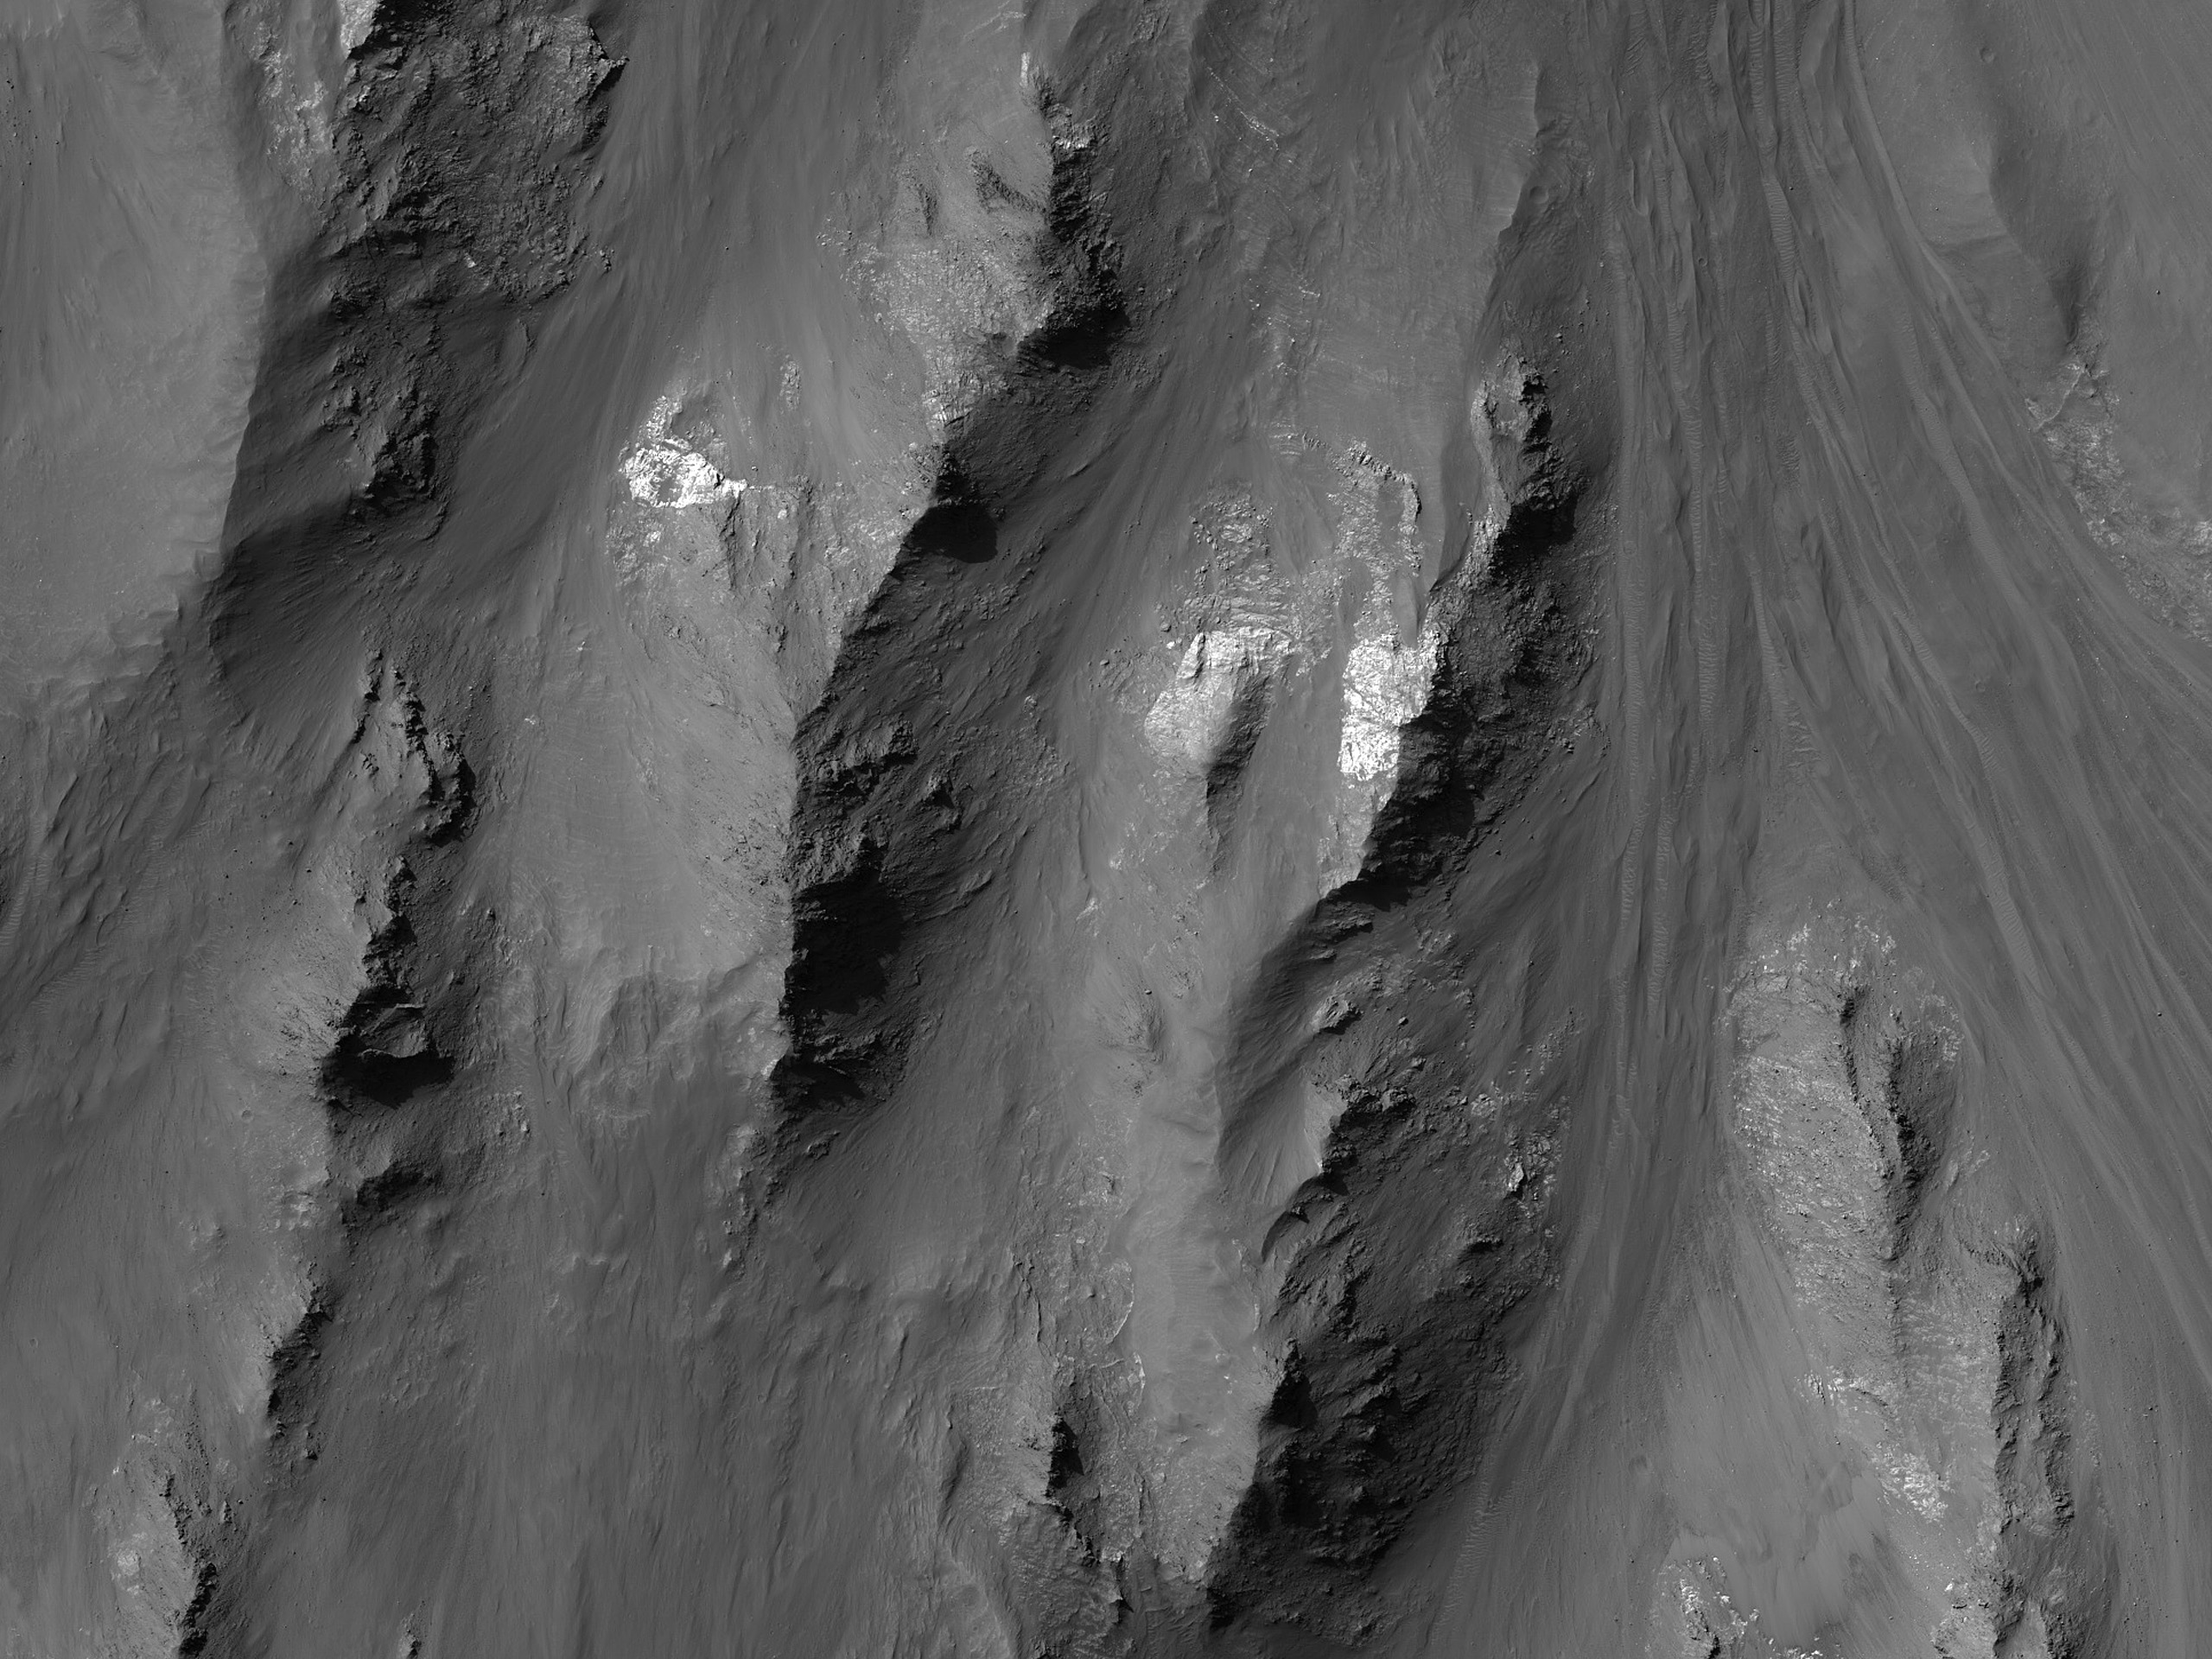 Coprates Chasma’daki yan kayaç eğimleri boyunca ortaya çıkmış çeşitli maddeler